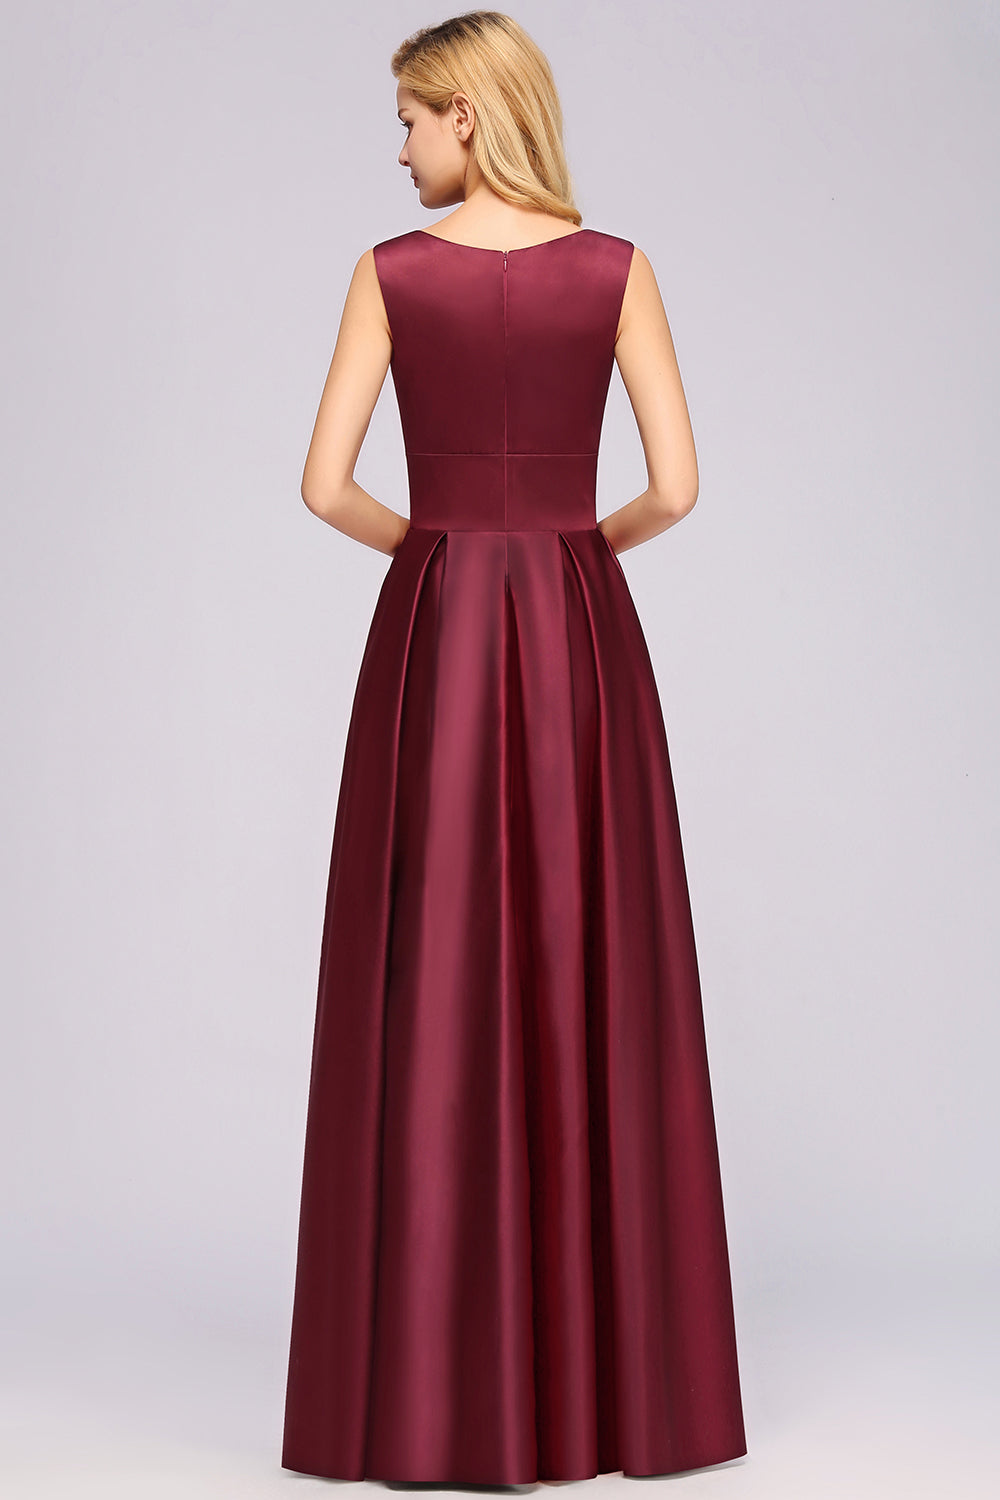 Vintage Deep-V-Neck Long Burgundy Bridesmaid Dress Online-27dress